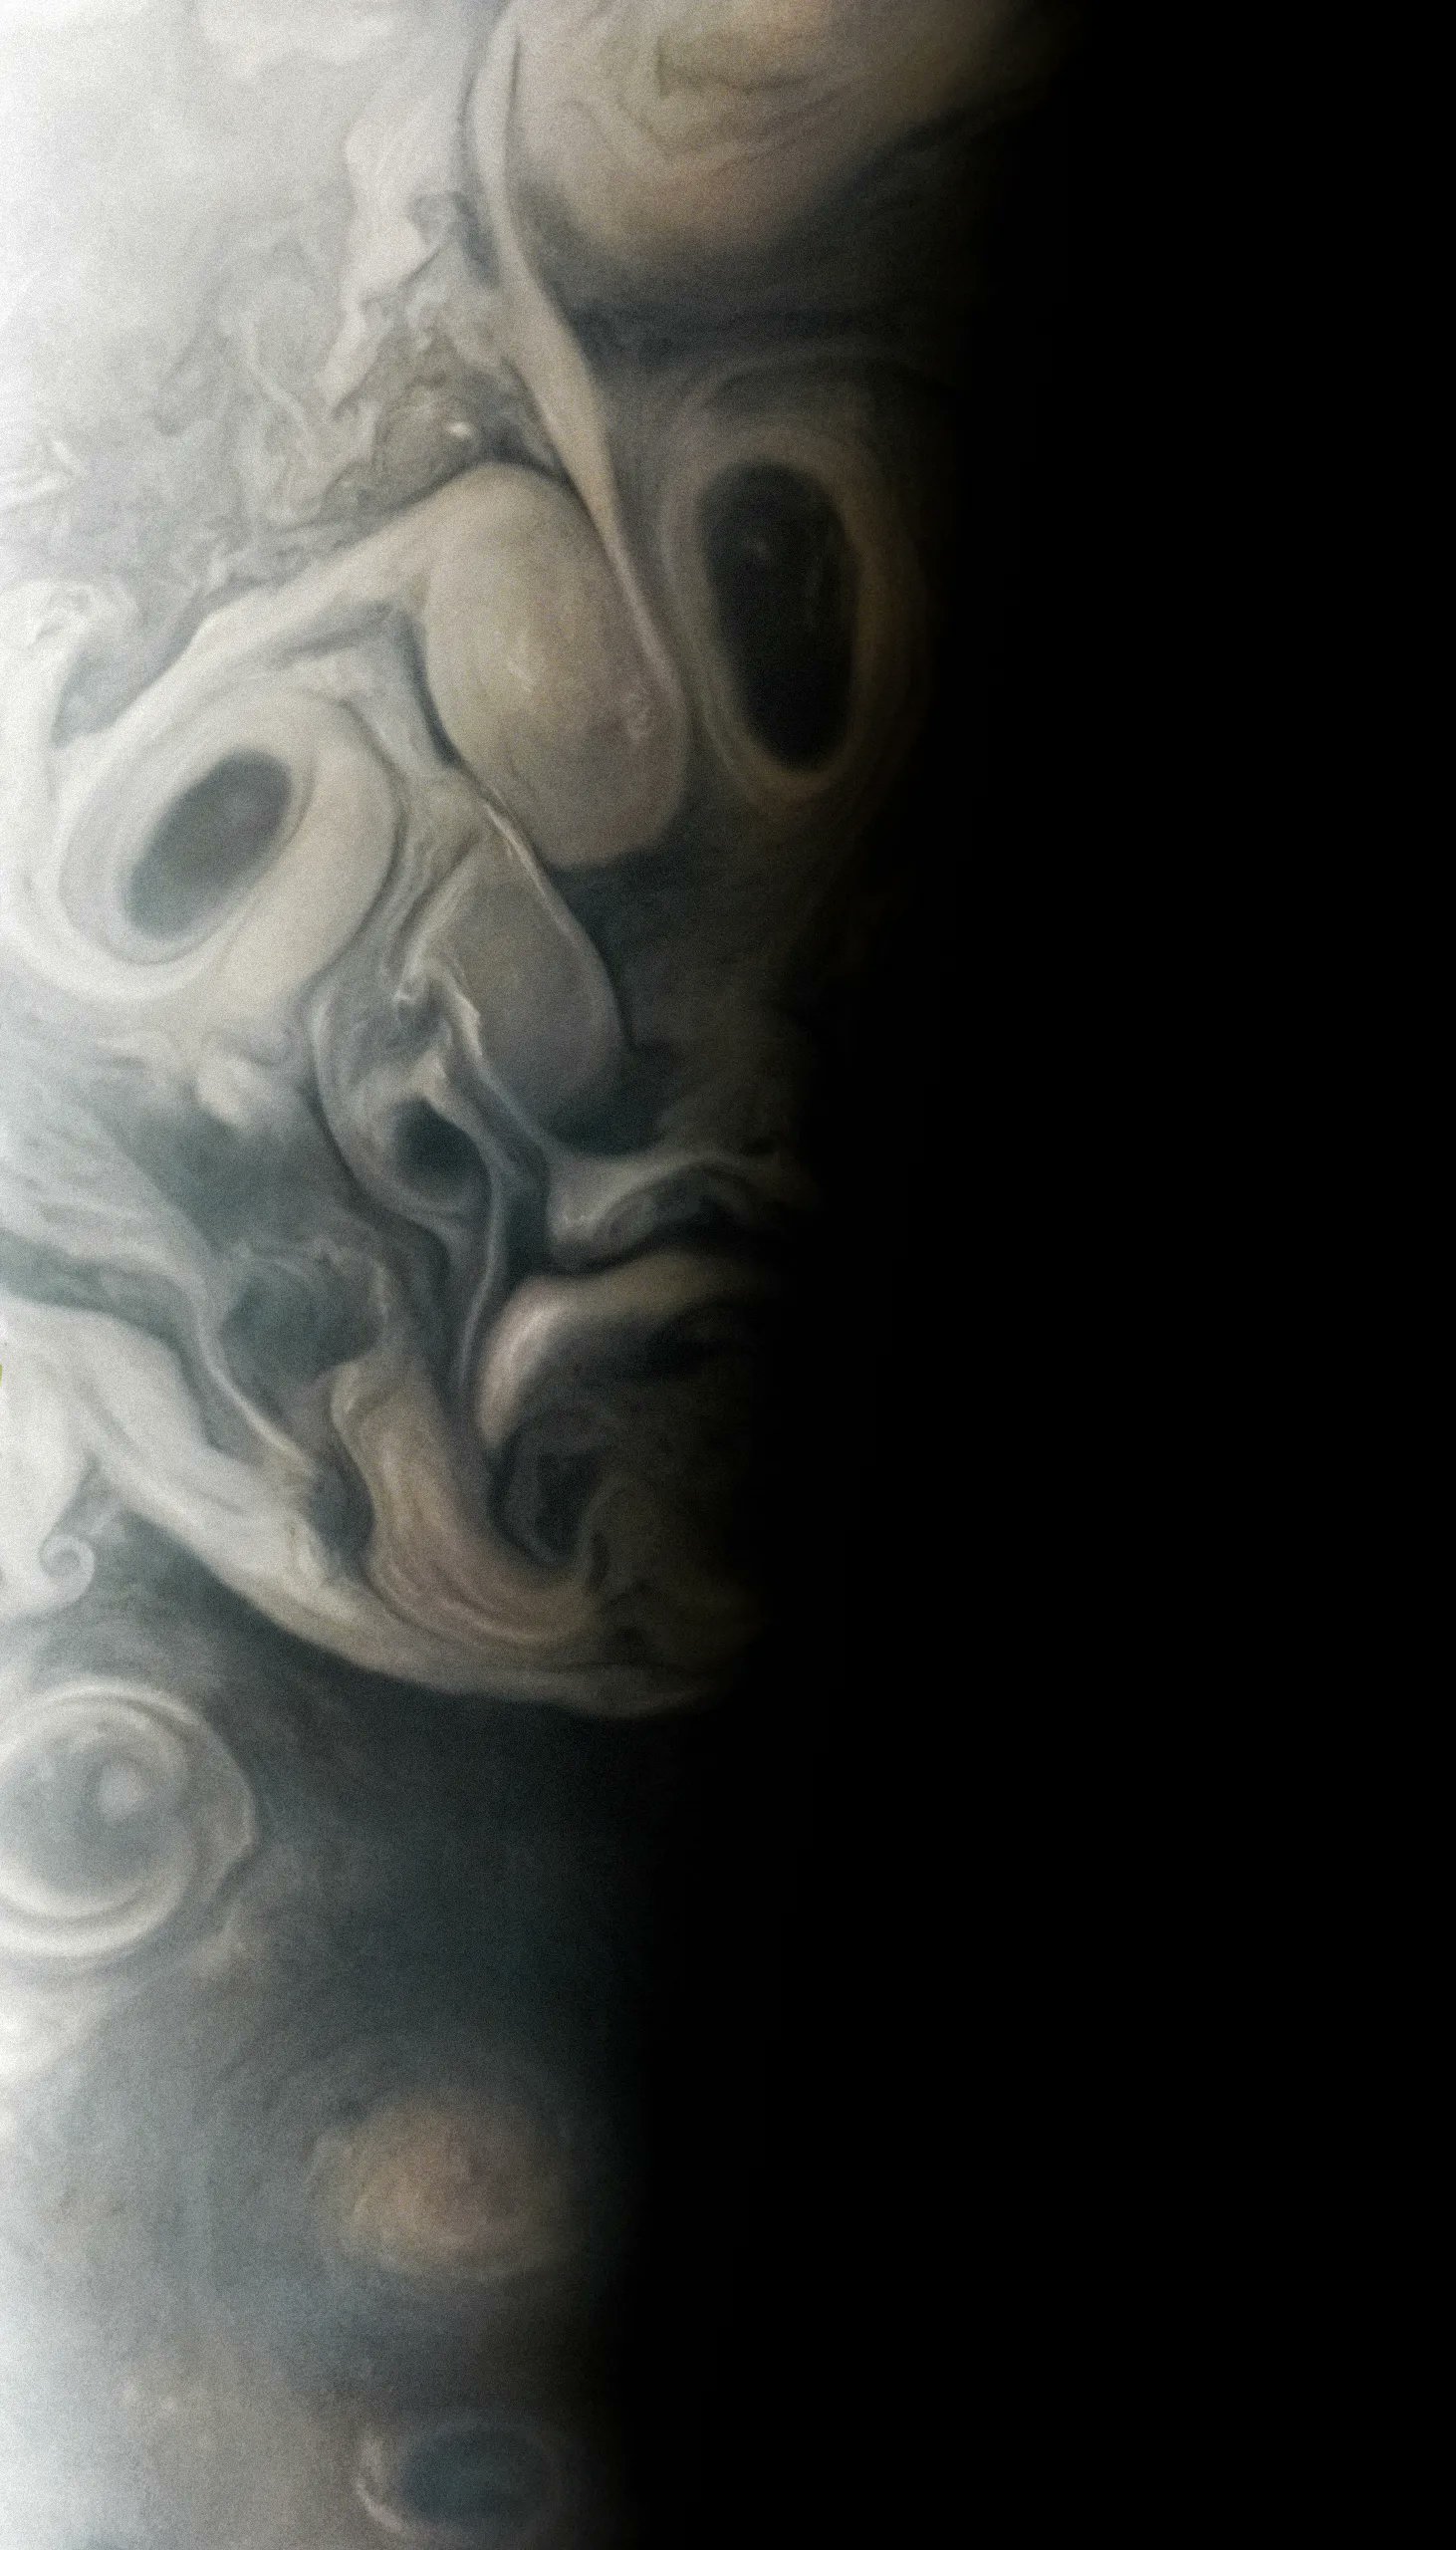 Jupiter's face